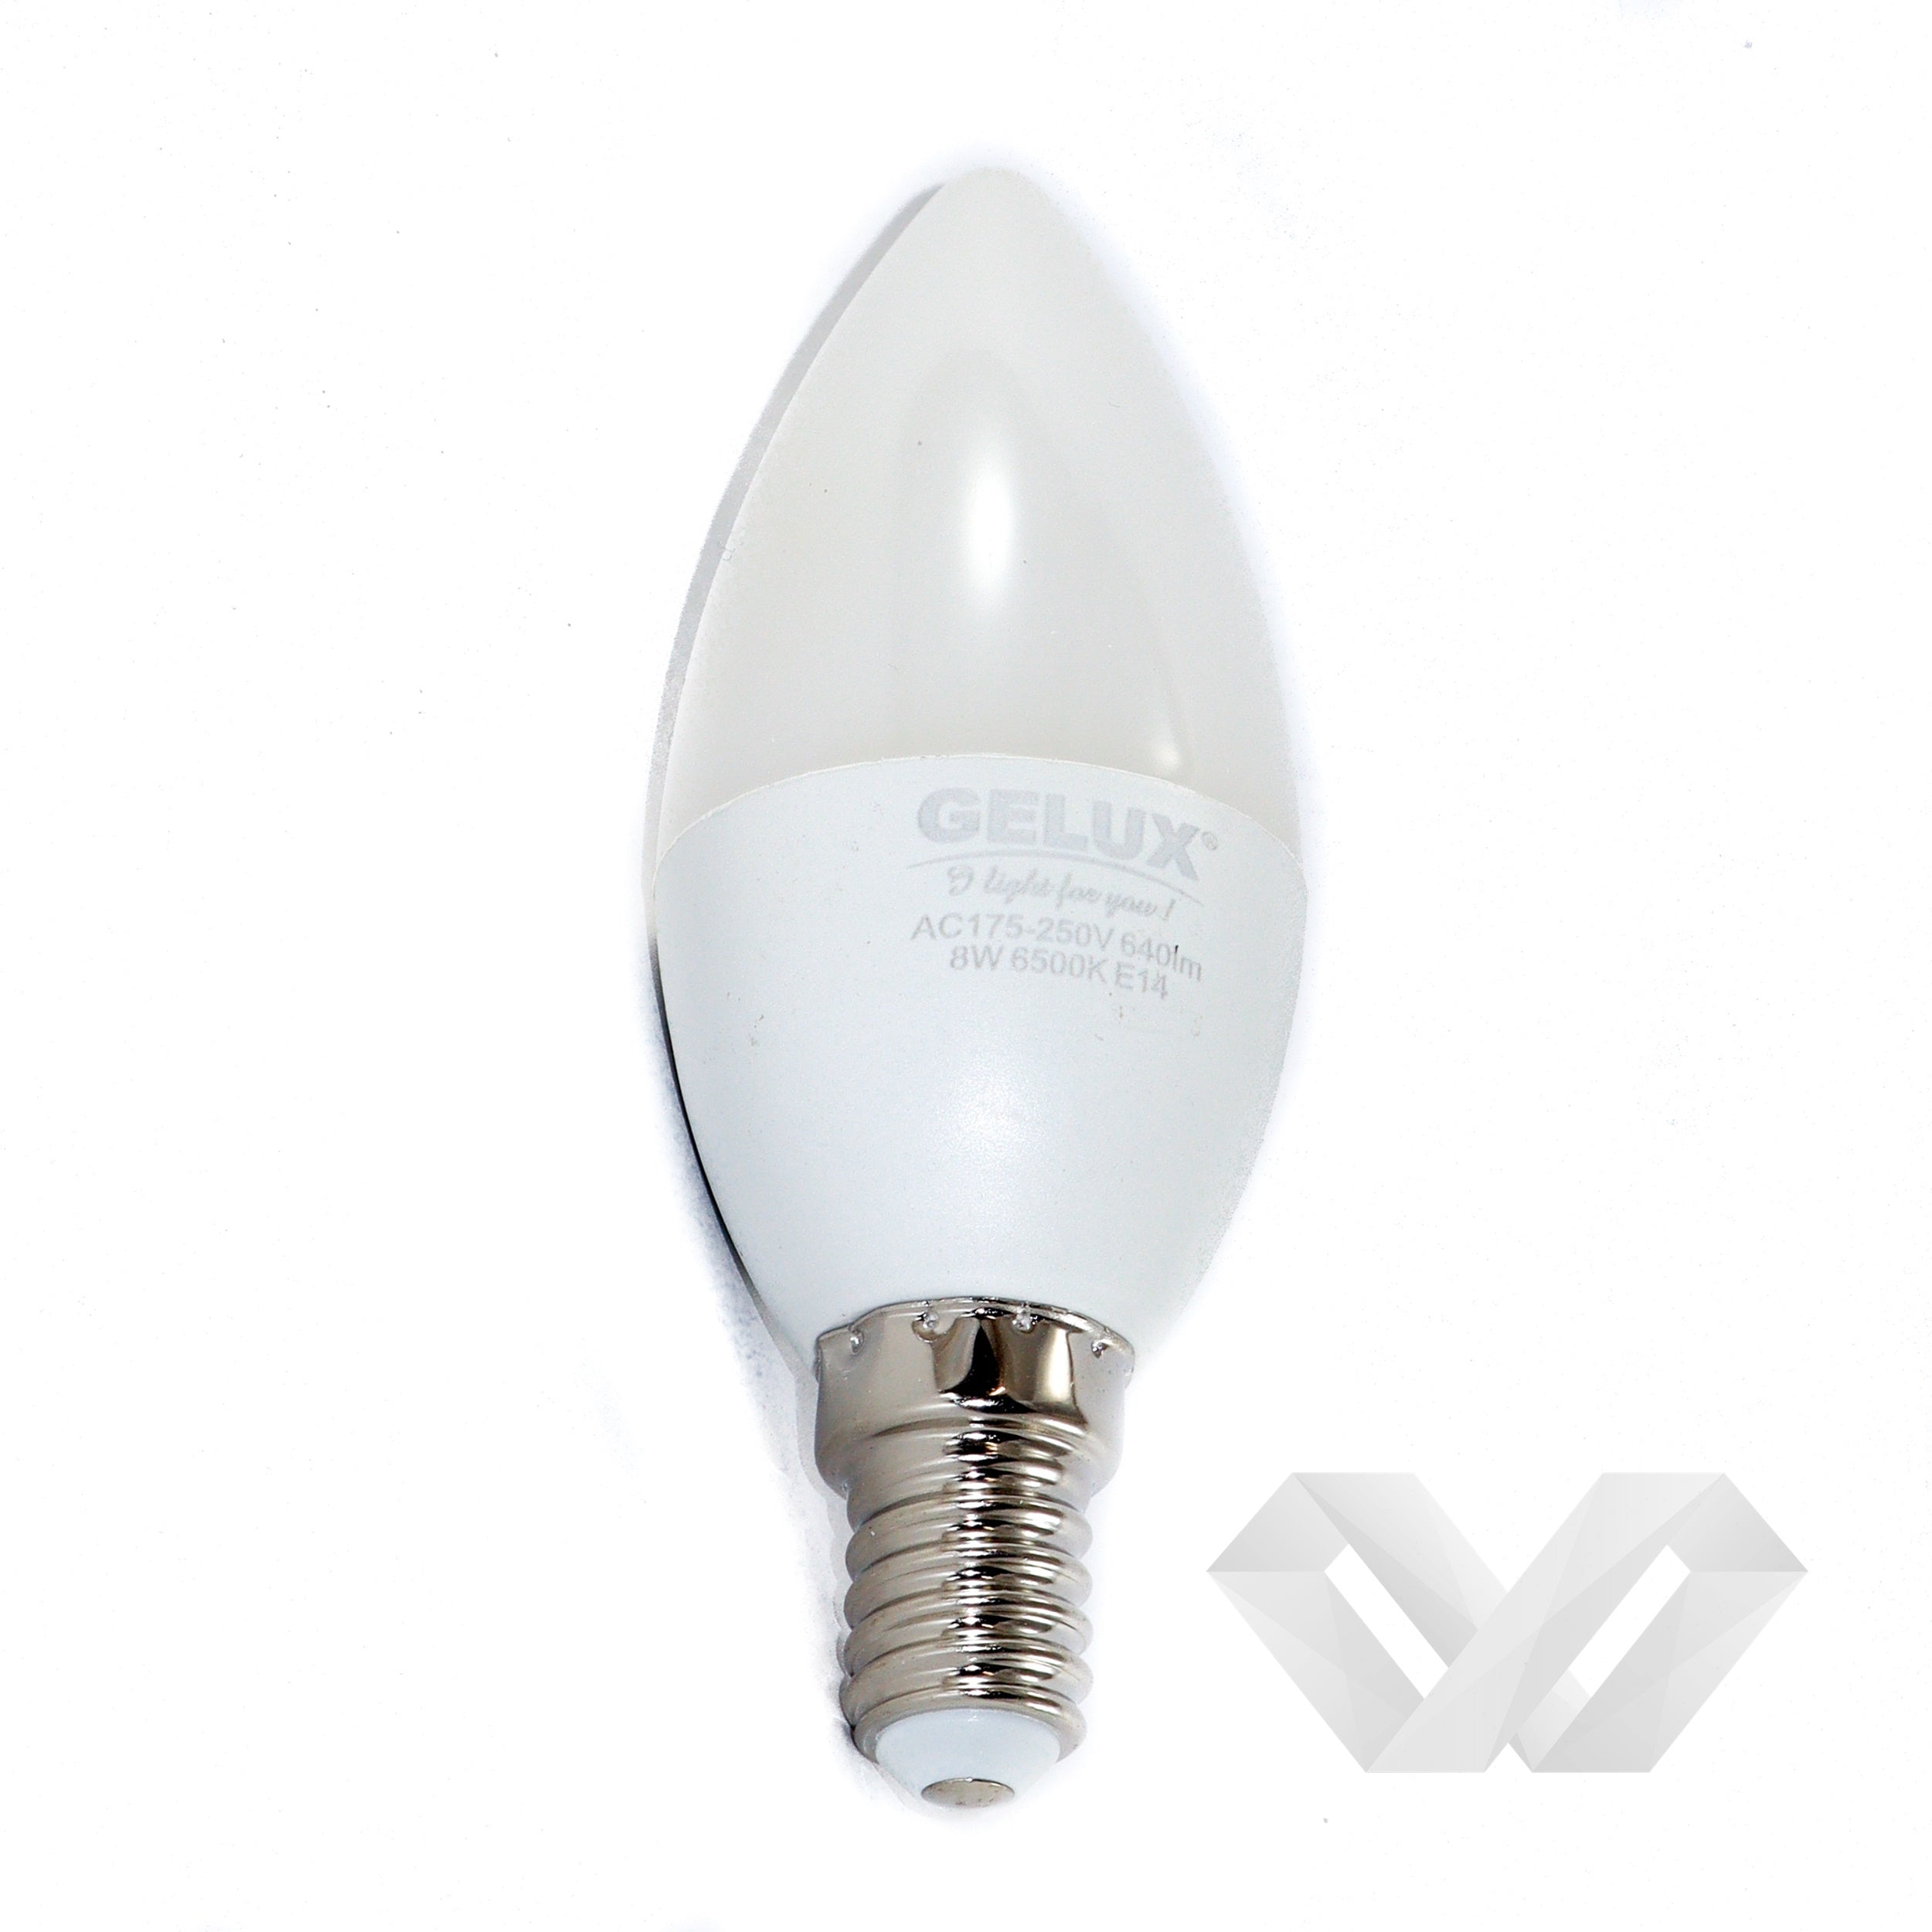 Bec LED Lumanare 5W E14 ECOLED, echivalent 40W lumina calda, Gelux